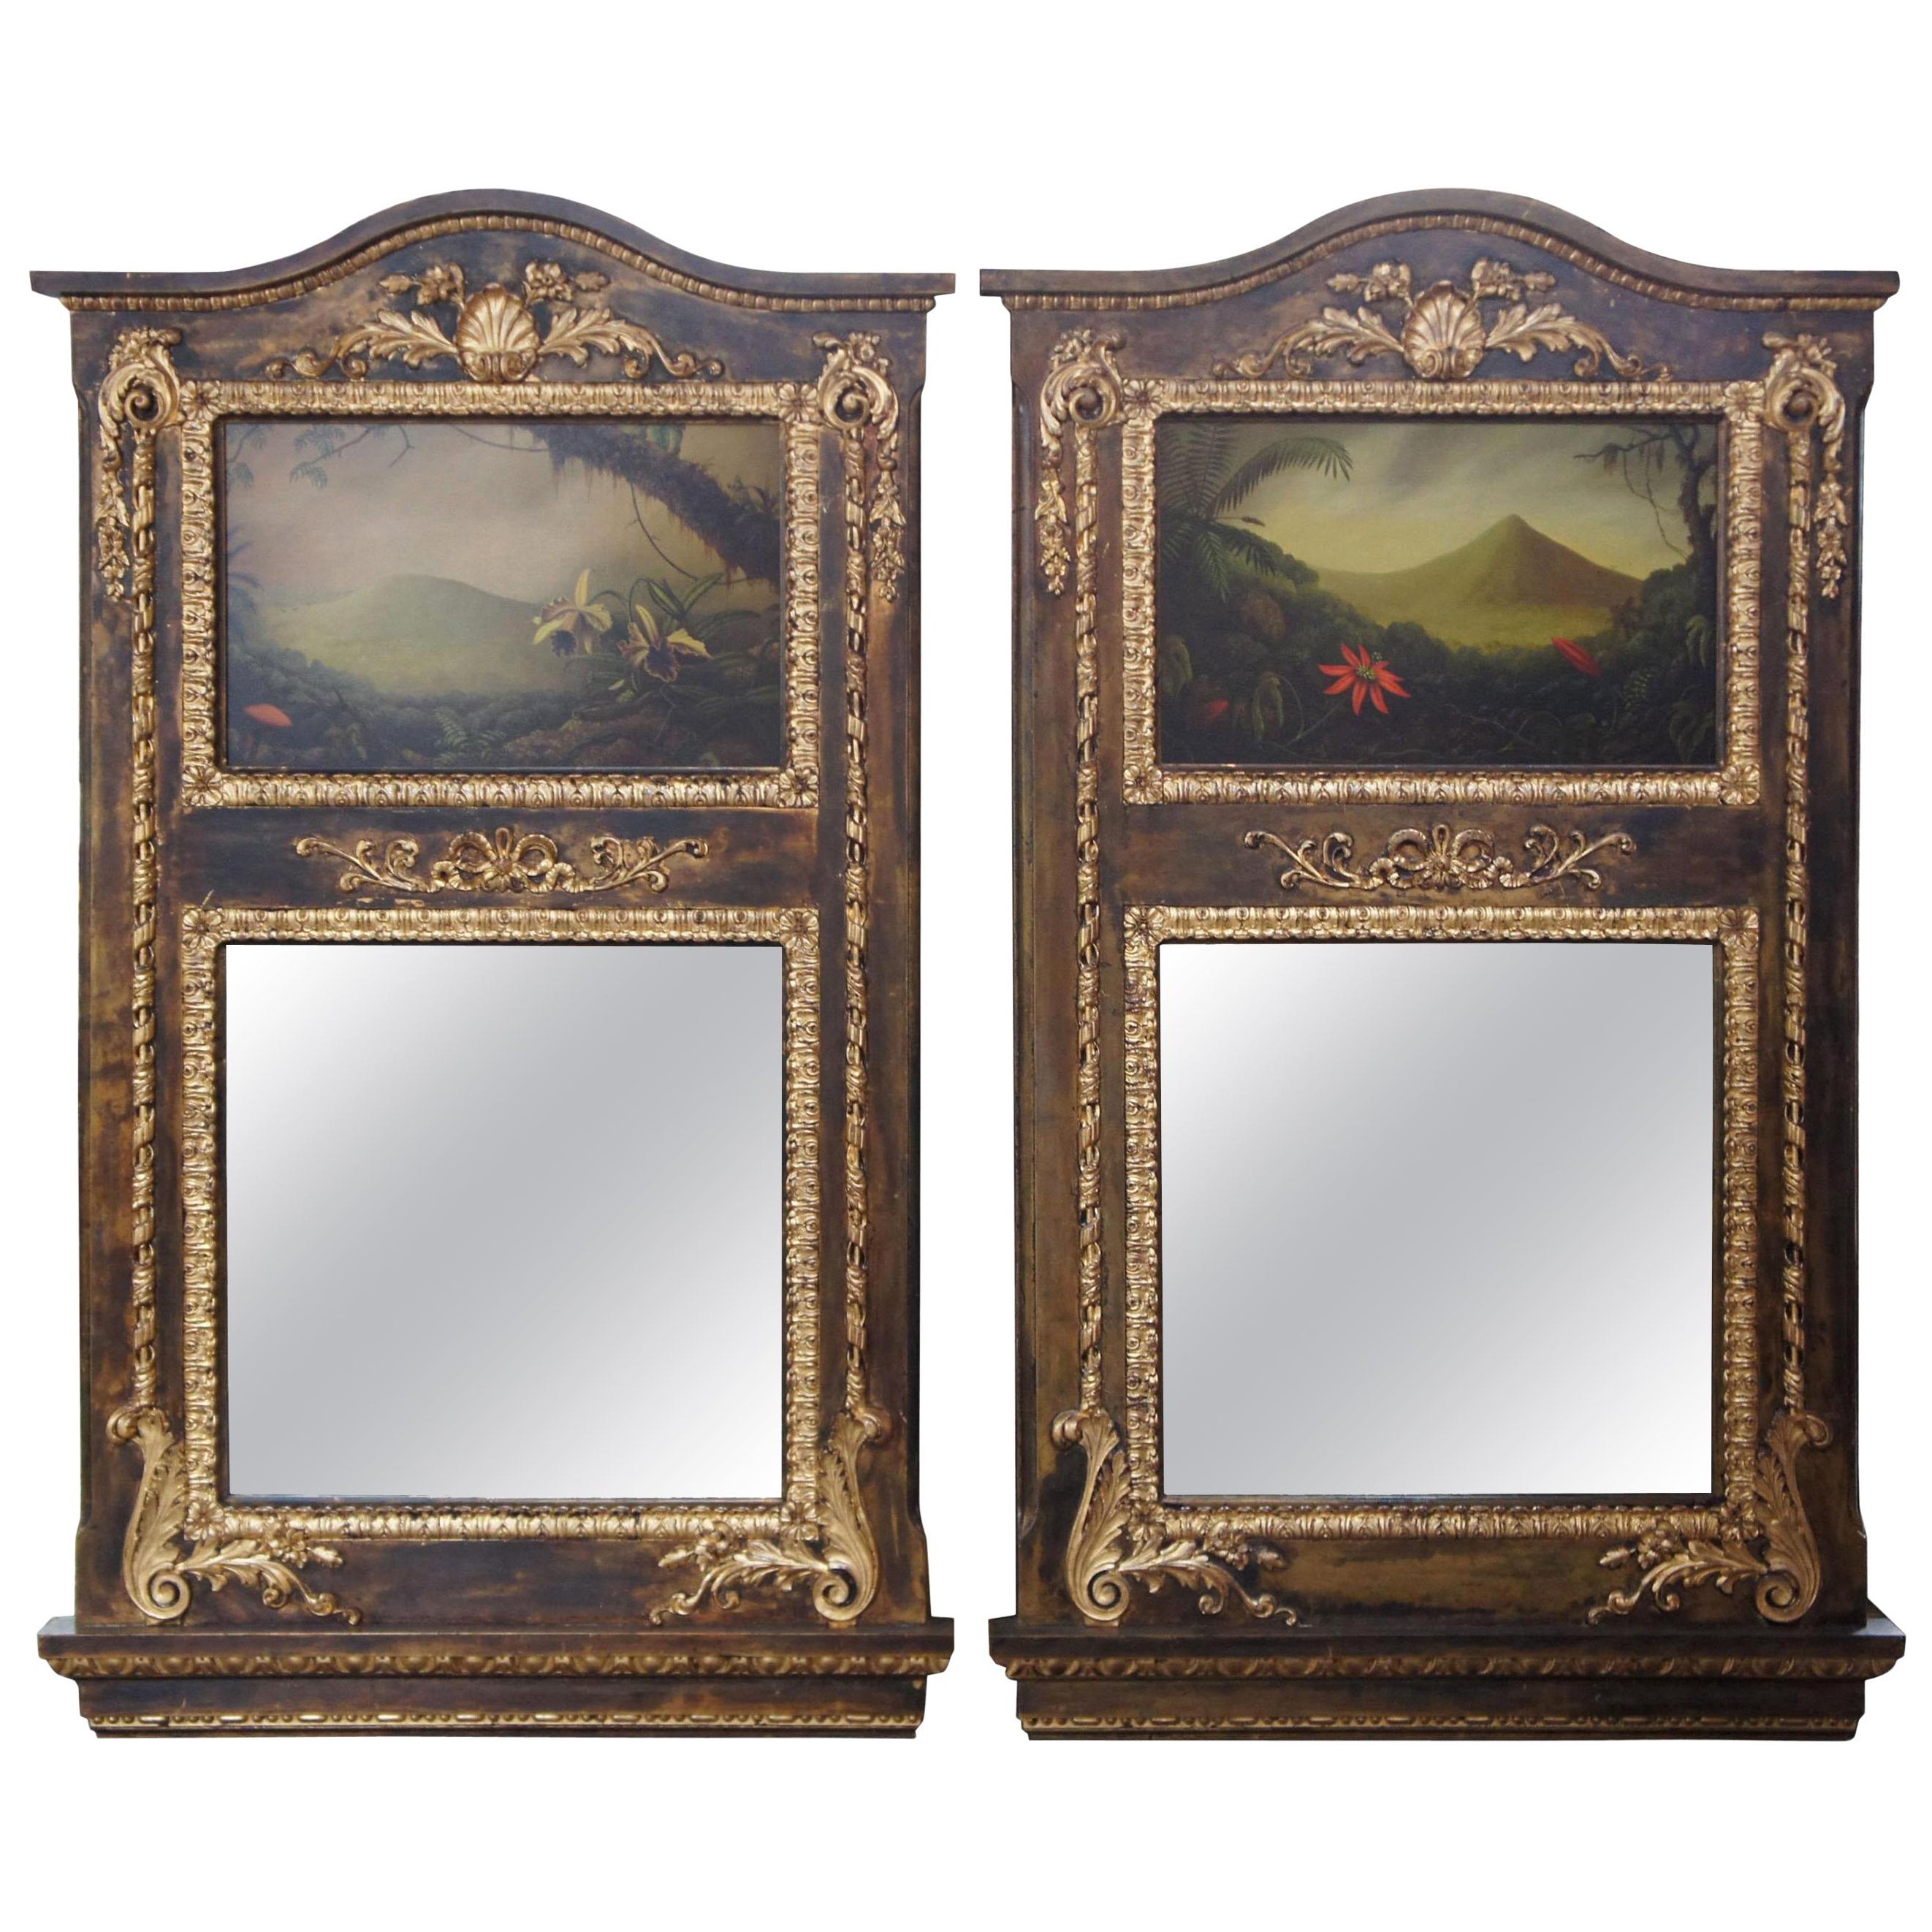 2 miroirs muraux monumentaux néoclassiques avec peintures à l'huile originales de Peter Edlund